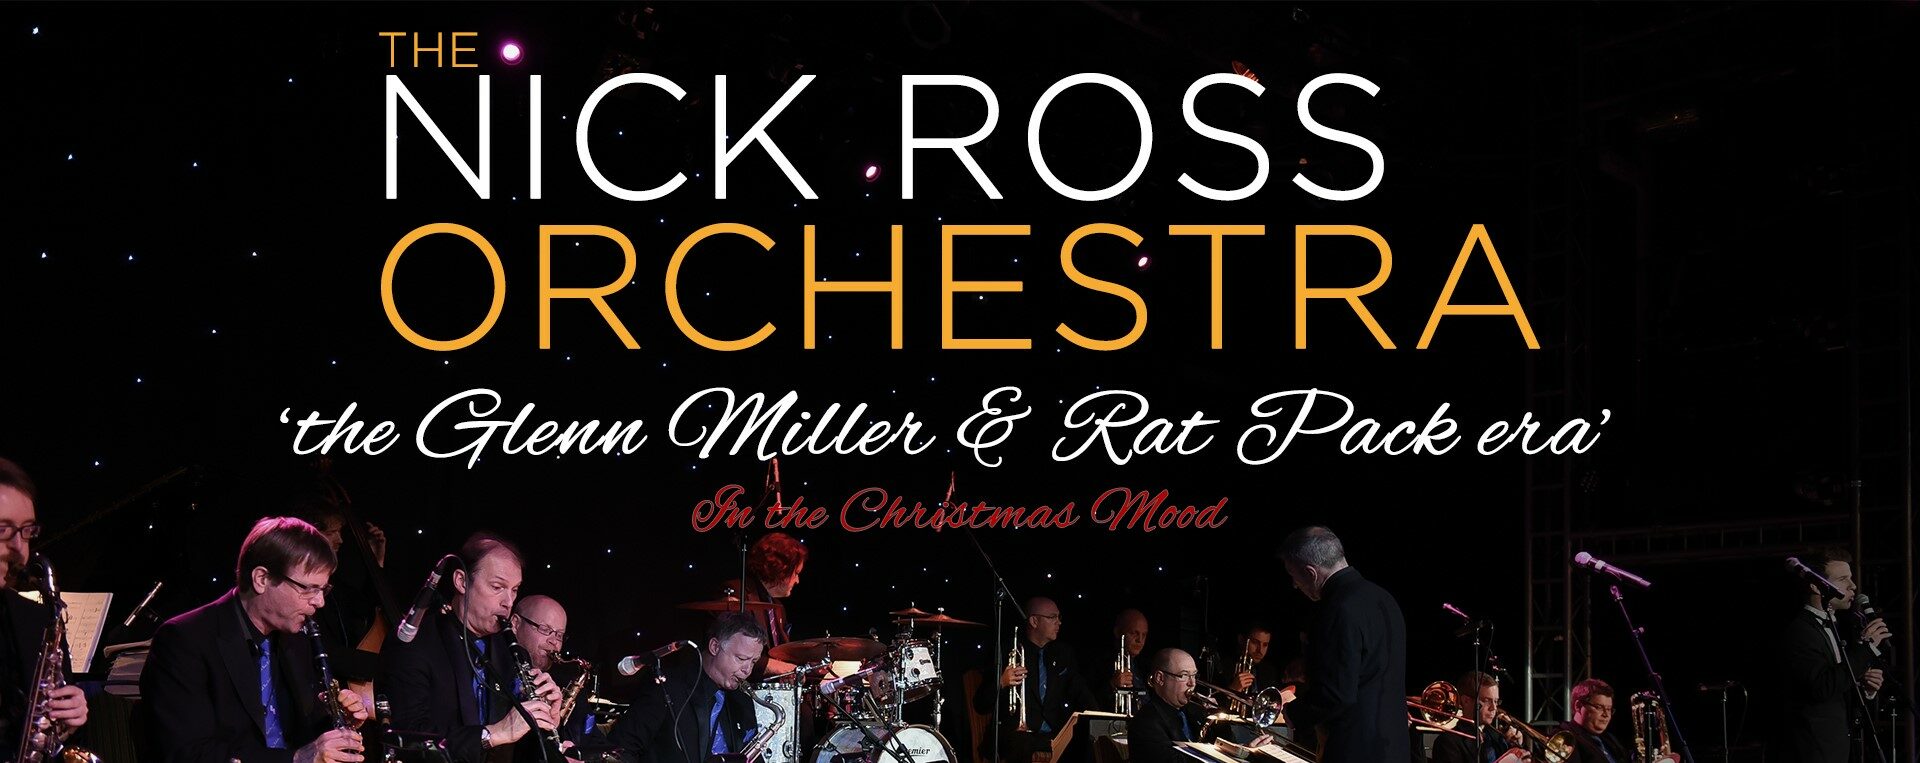 Nick Ross Orchestra “The Glenn Miller & Rat Pack Era” In the Christmas Mood